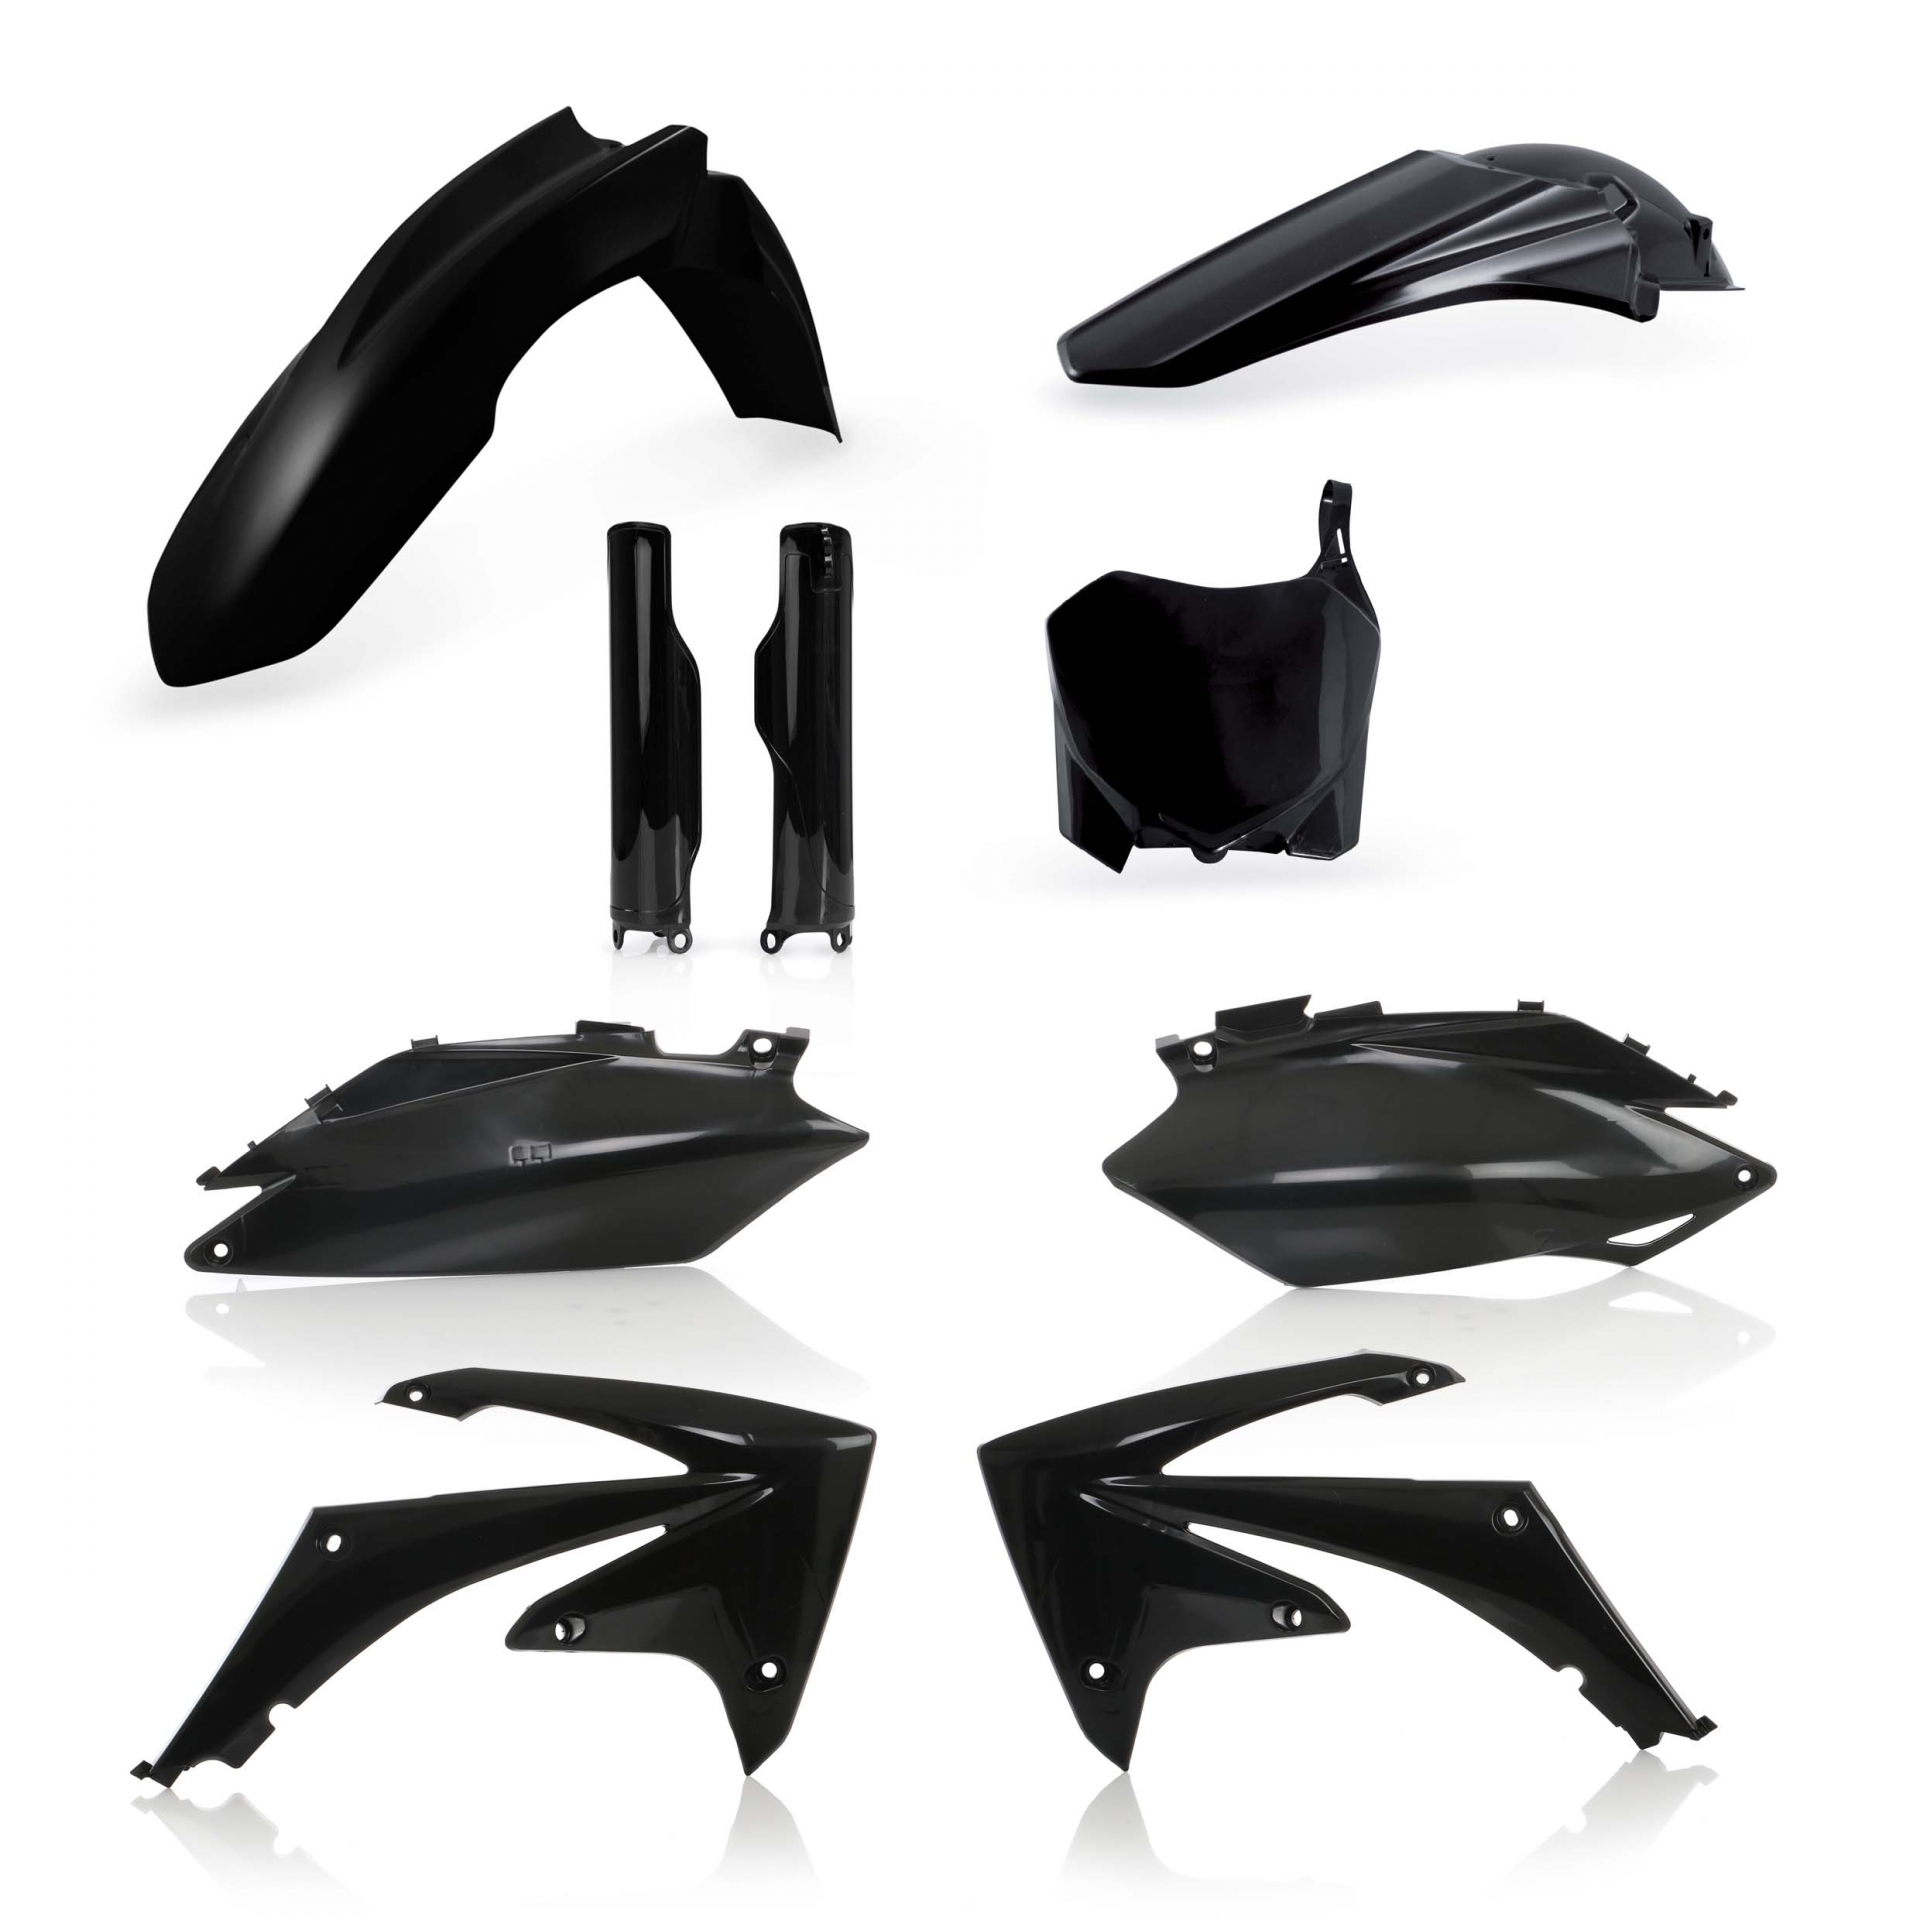 Plastikteile für deine Honda CRF / CR 250/450 in schwarz bestehend aus Kotflügel vorn Kotflügel hinten Kühlerspoiler Seitenteile Gabelschützer Startnummerntafel